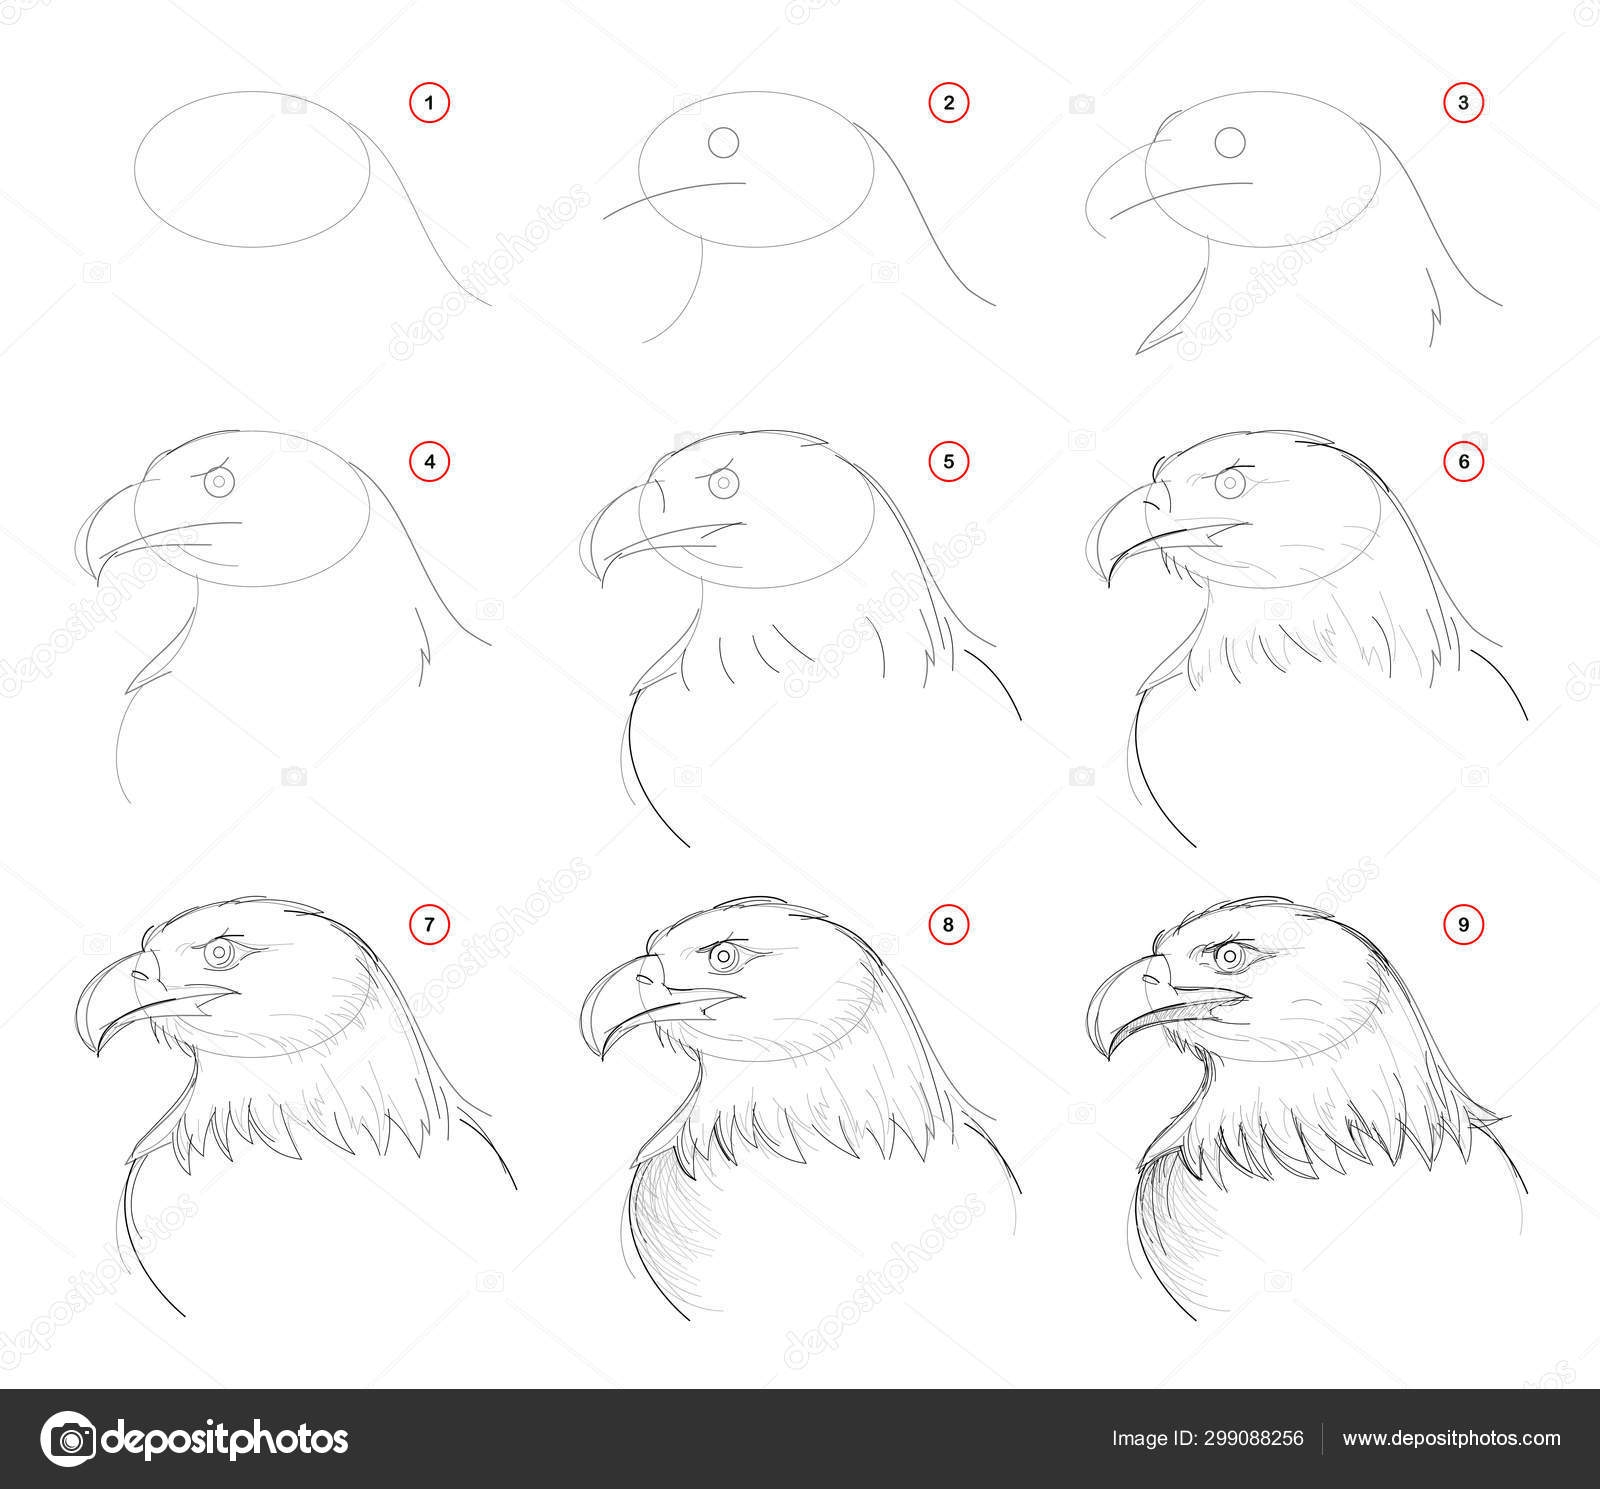 Поэтапное рисование орла карандашом